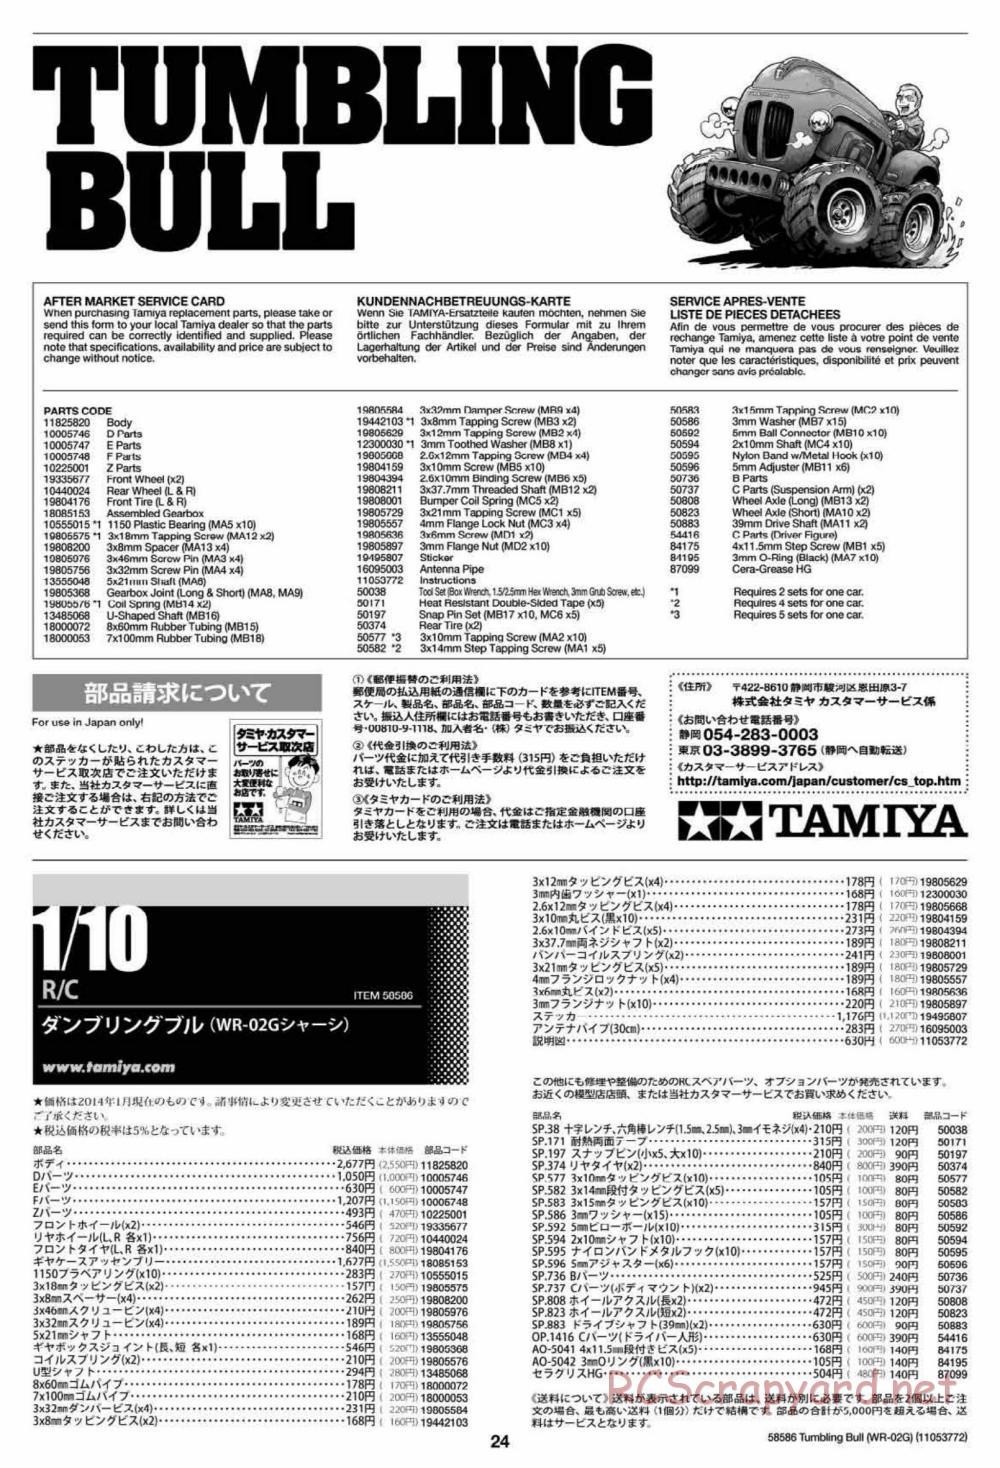 Tamiya - Tumbling Bull Chassis - Manual - Page 24